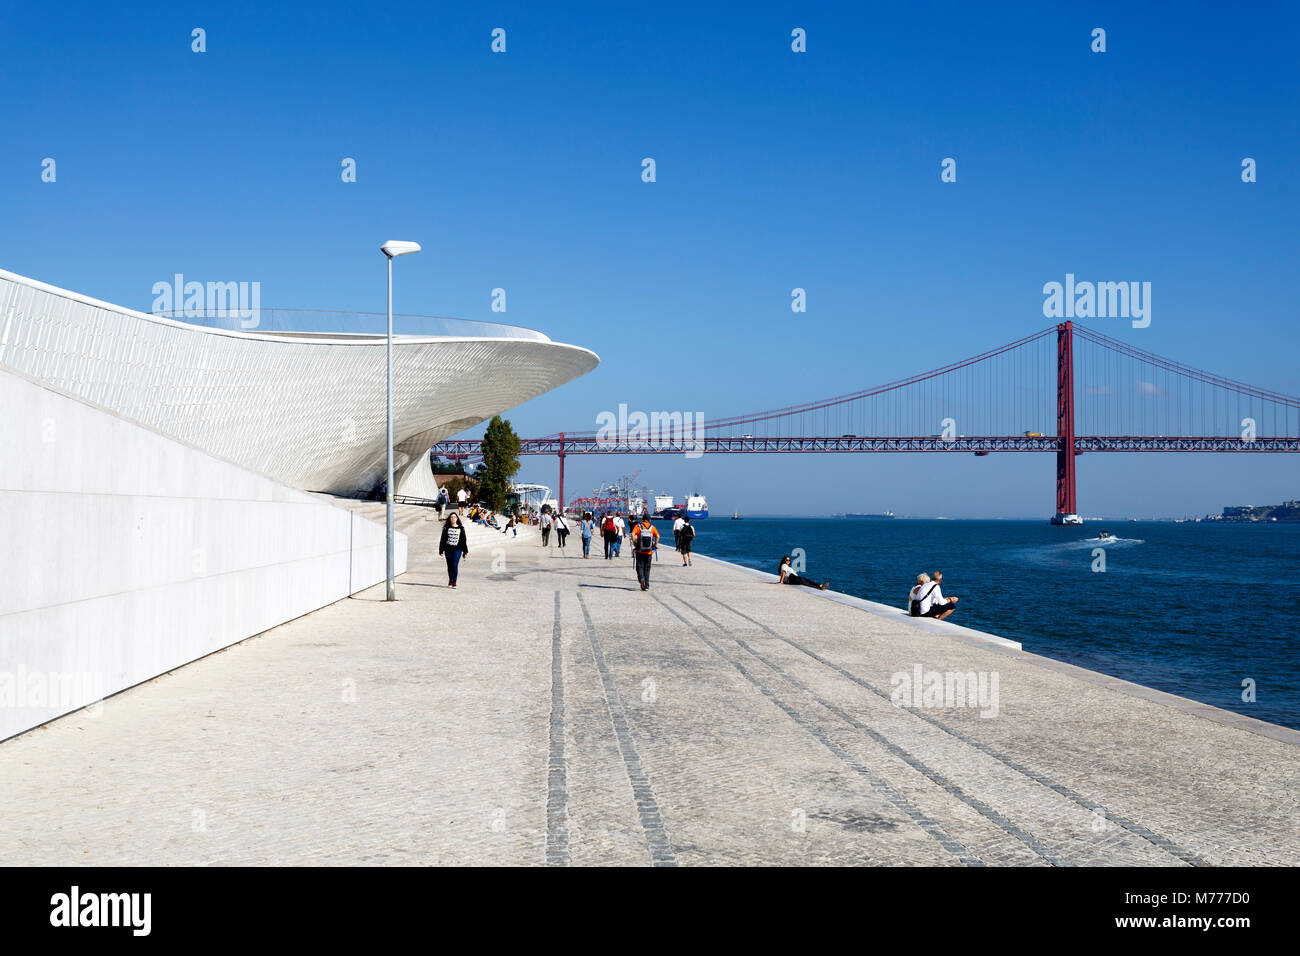 Les personnes bénéficiant de la promenade le long du fleuve en face de la forme de raie manta MAAT (Musée d'Art, Architecture et Technologie) à Lisbonne, Portugal Banque D'Images